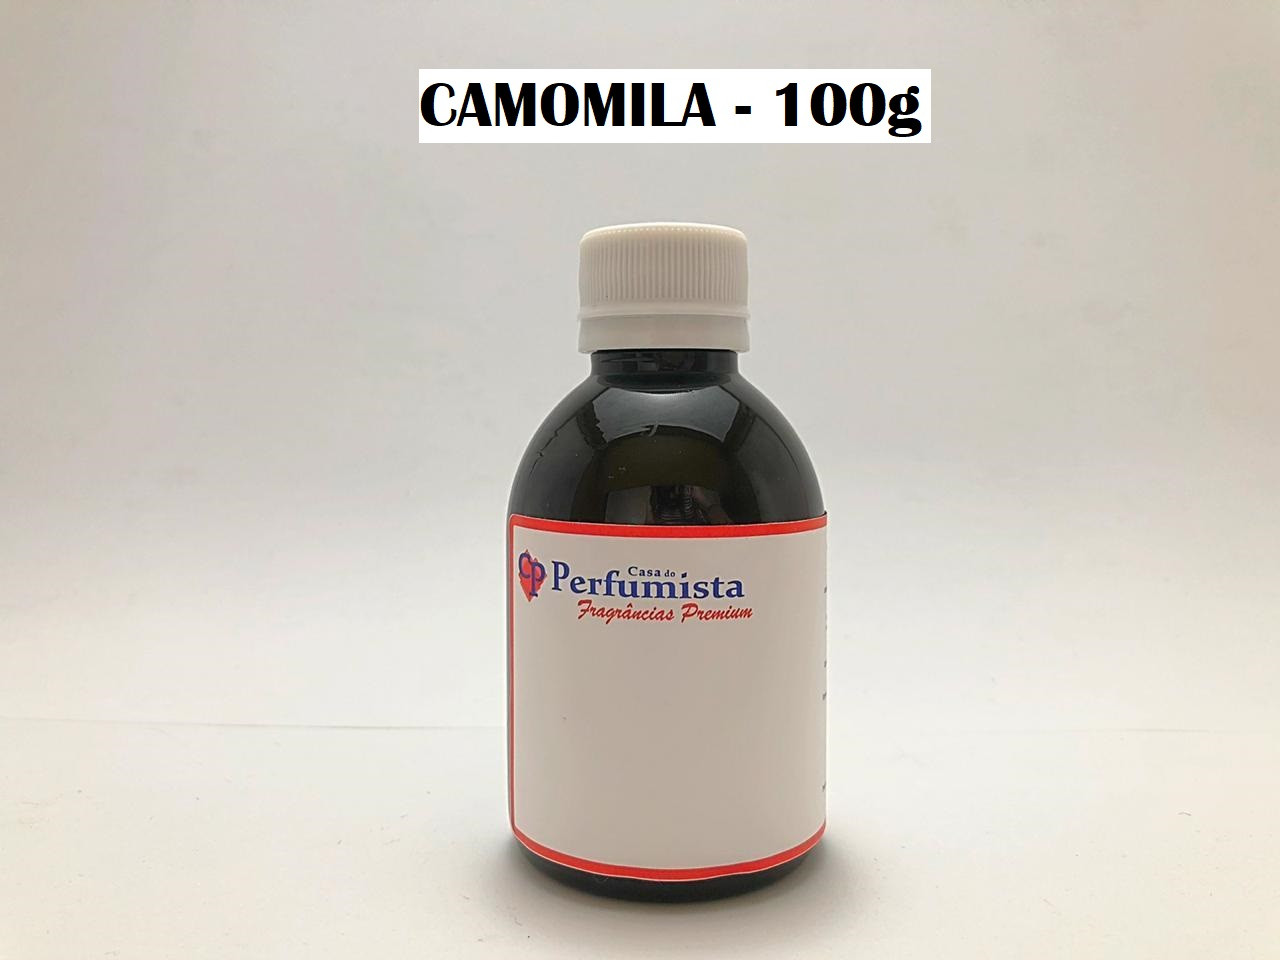 CAMOMILA - 100g